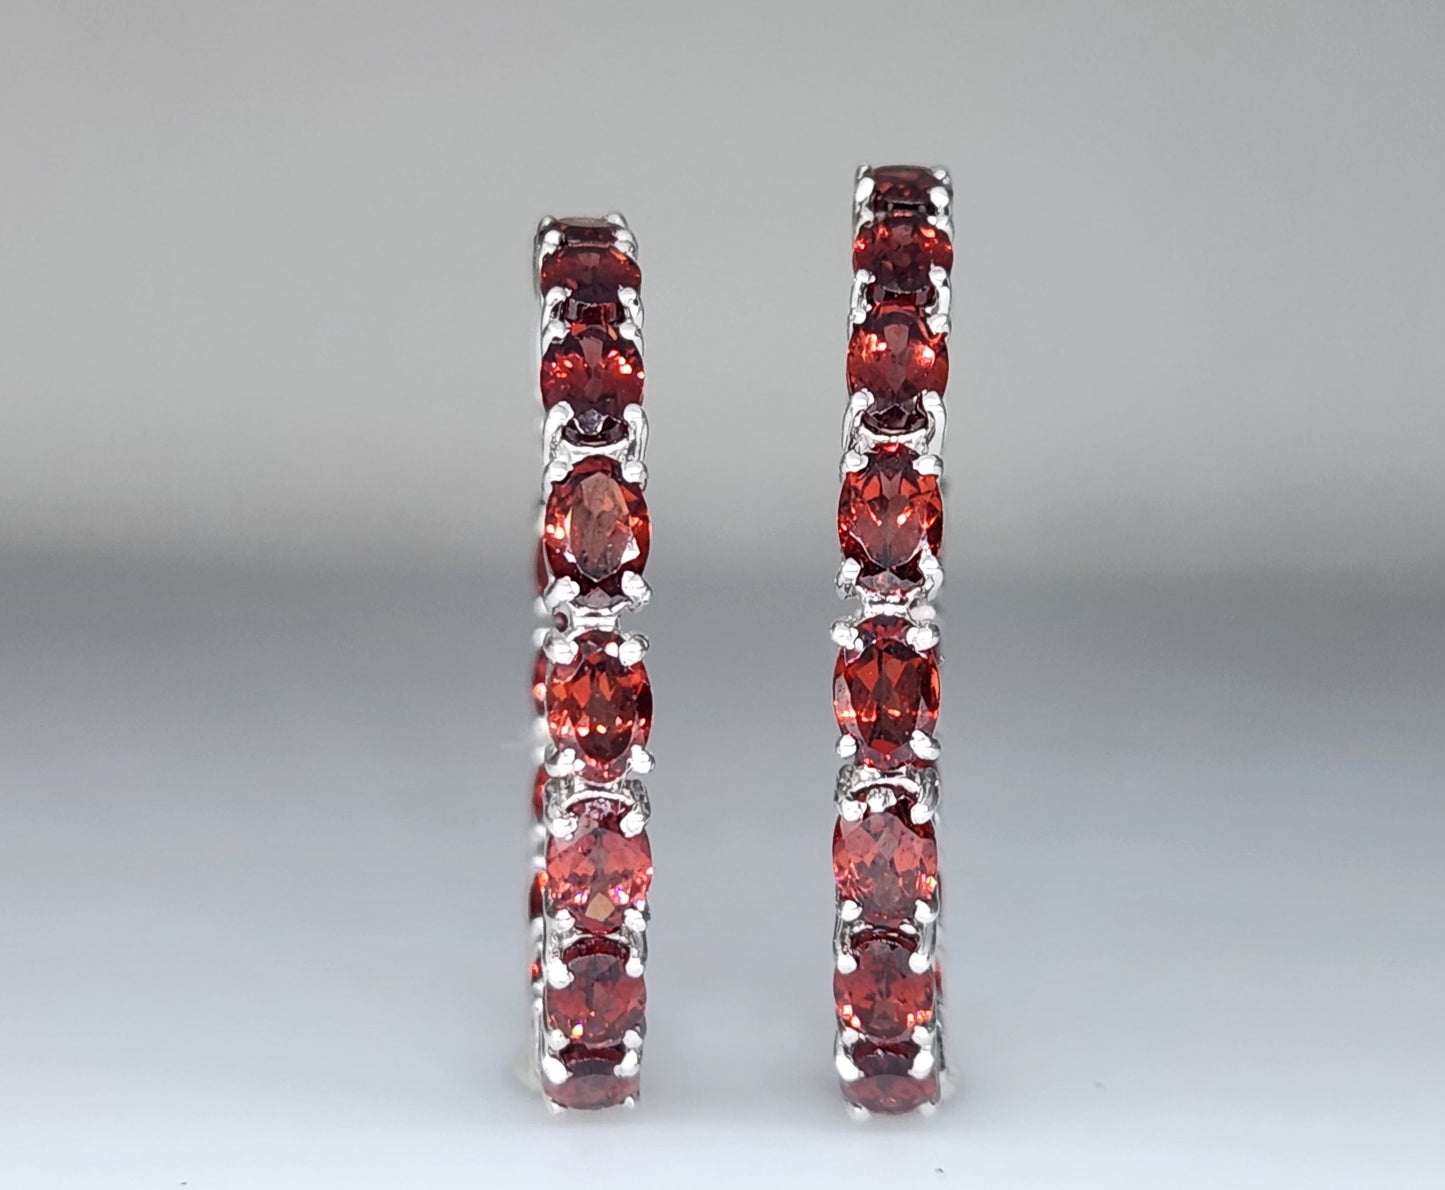 Red Garnet Gemstone Hoop Earrings Sterling Silver #435